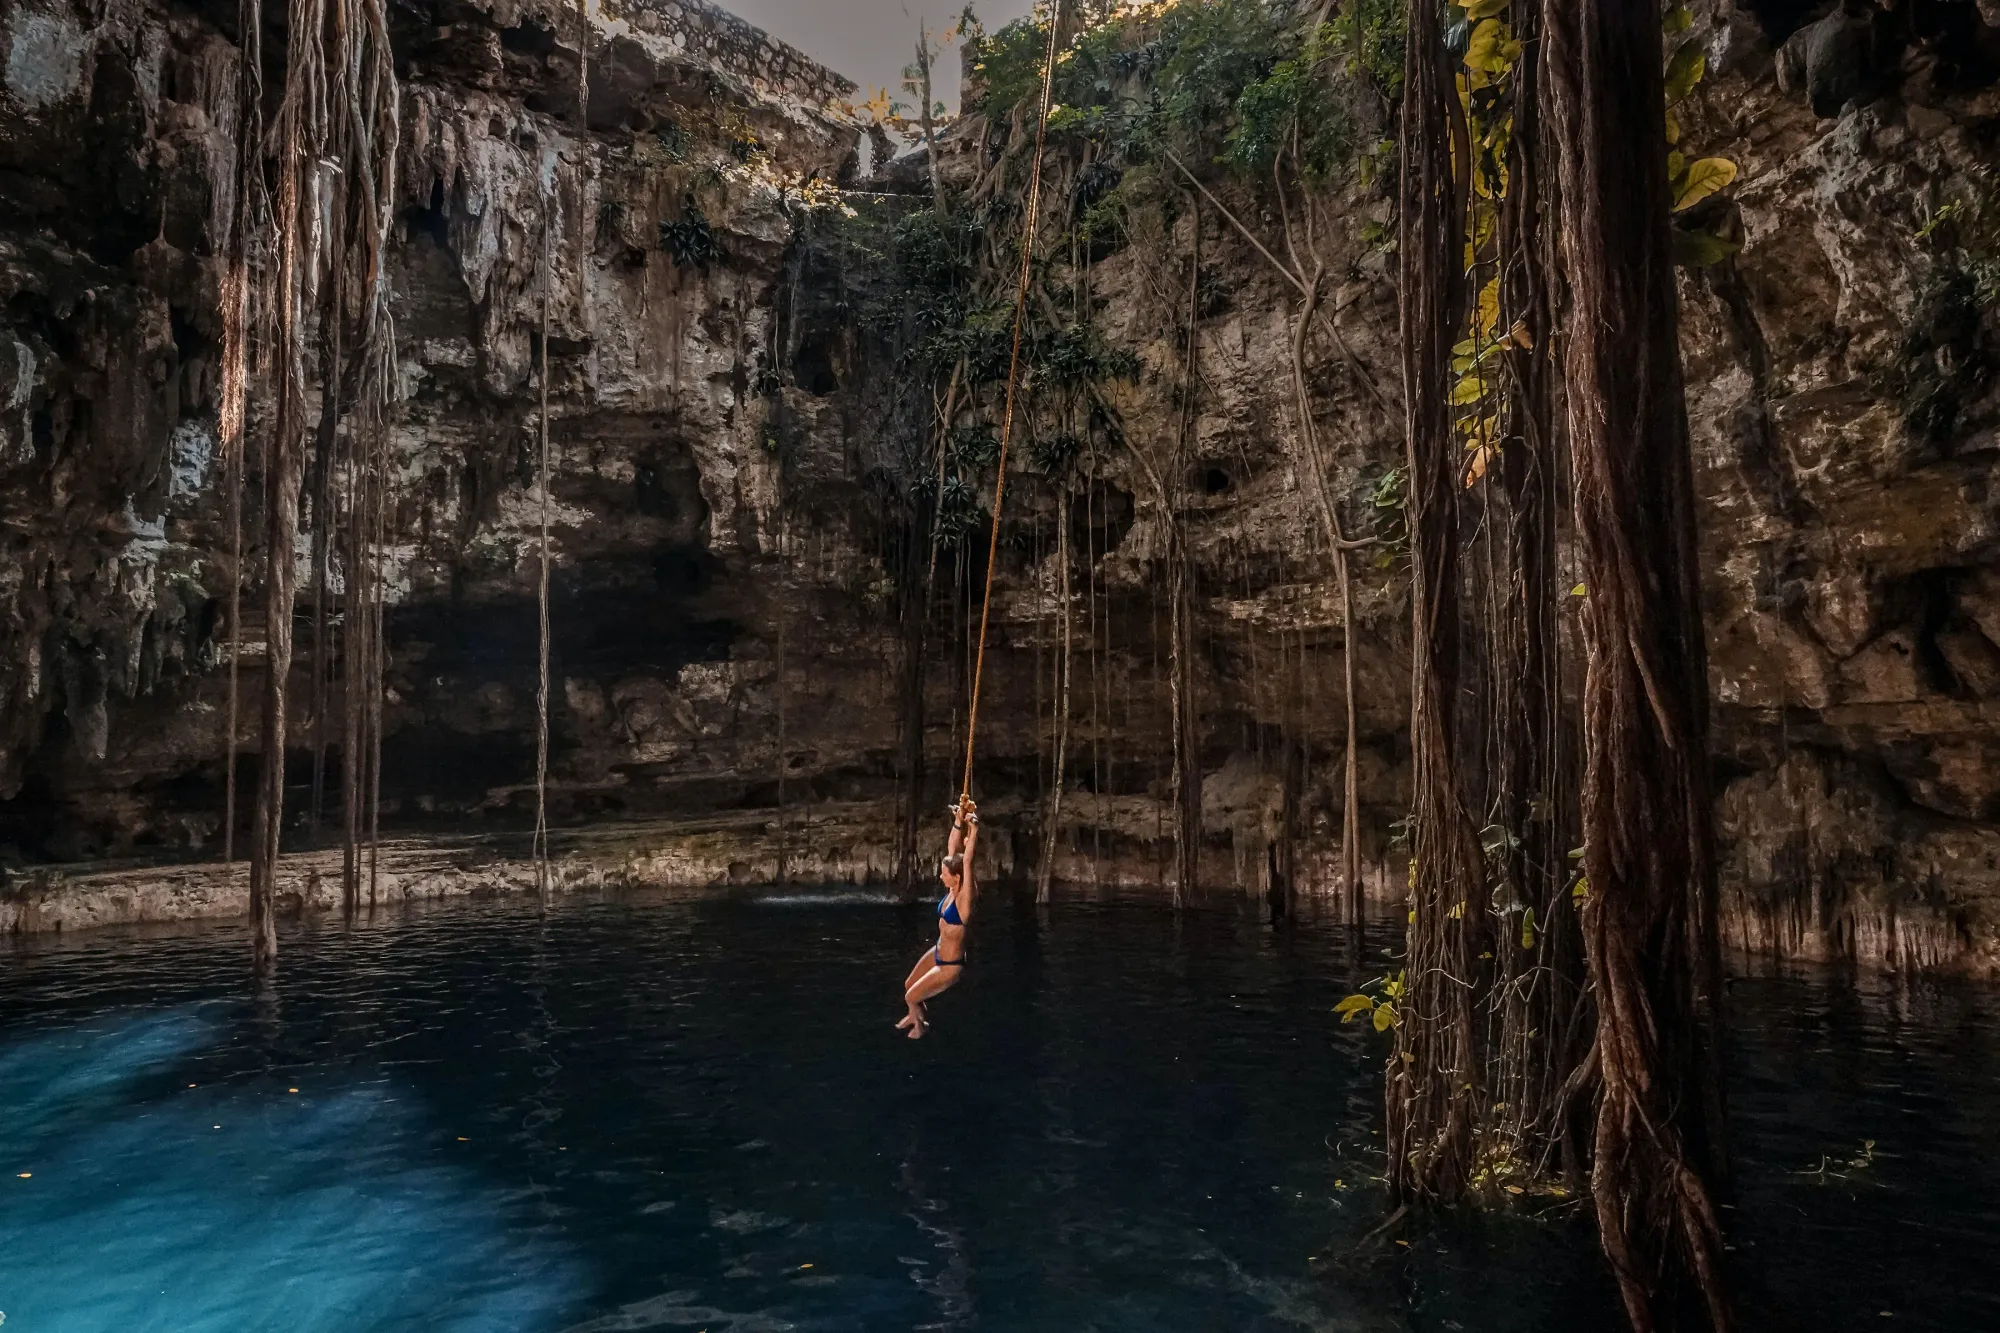 Image of a "Cenote" in Yucatan, Mexico